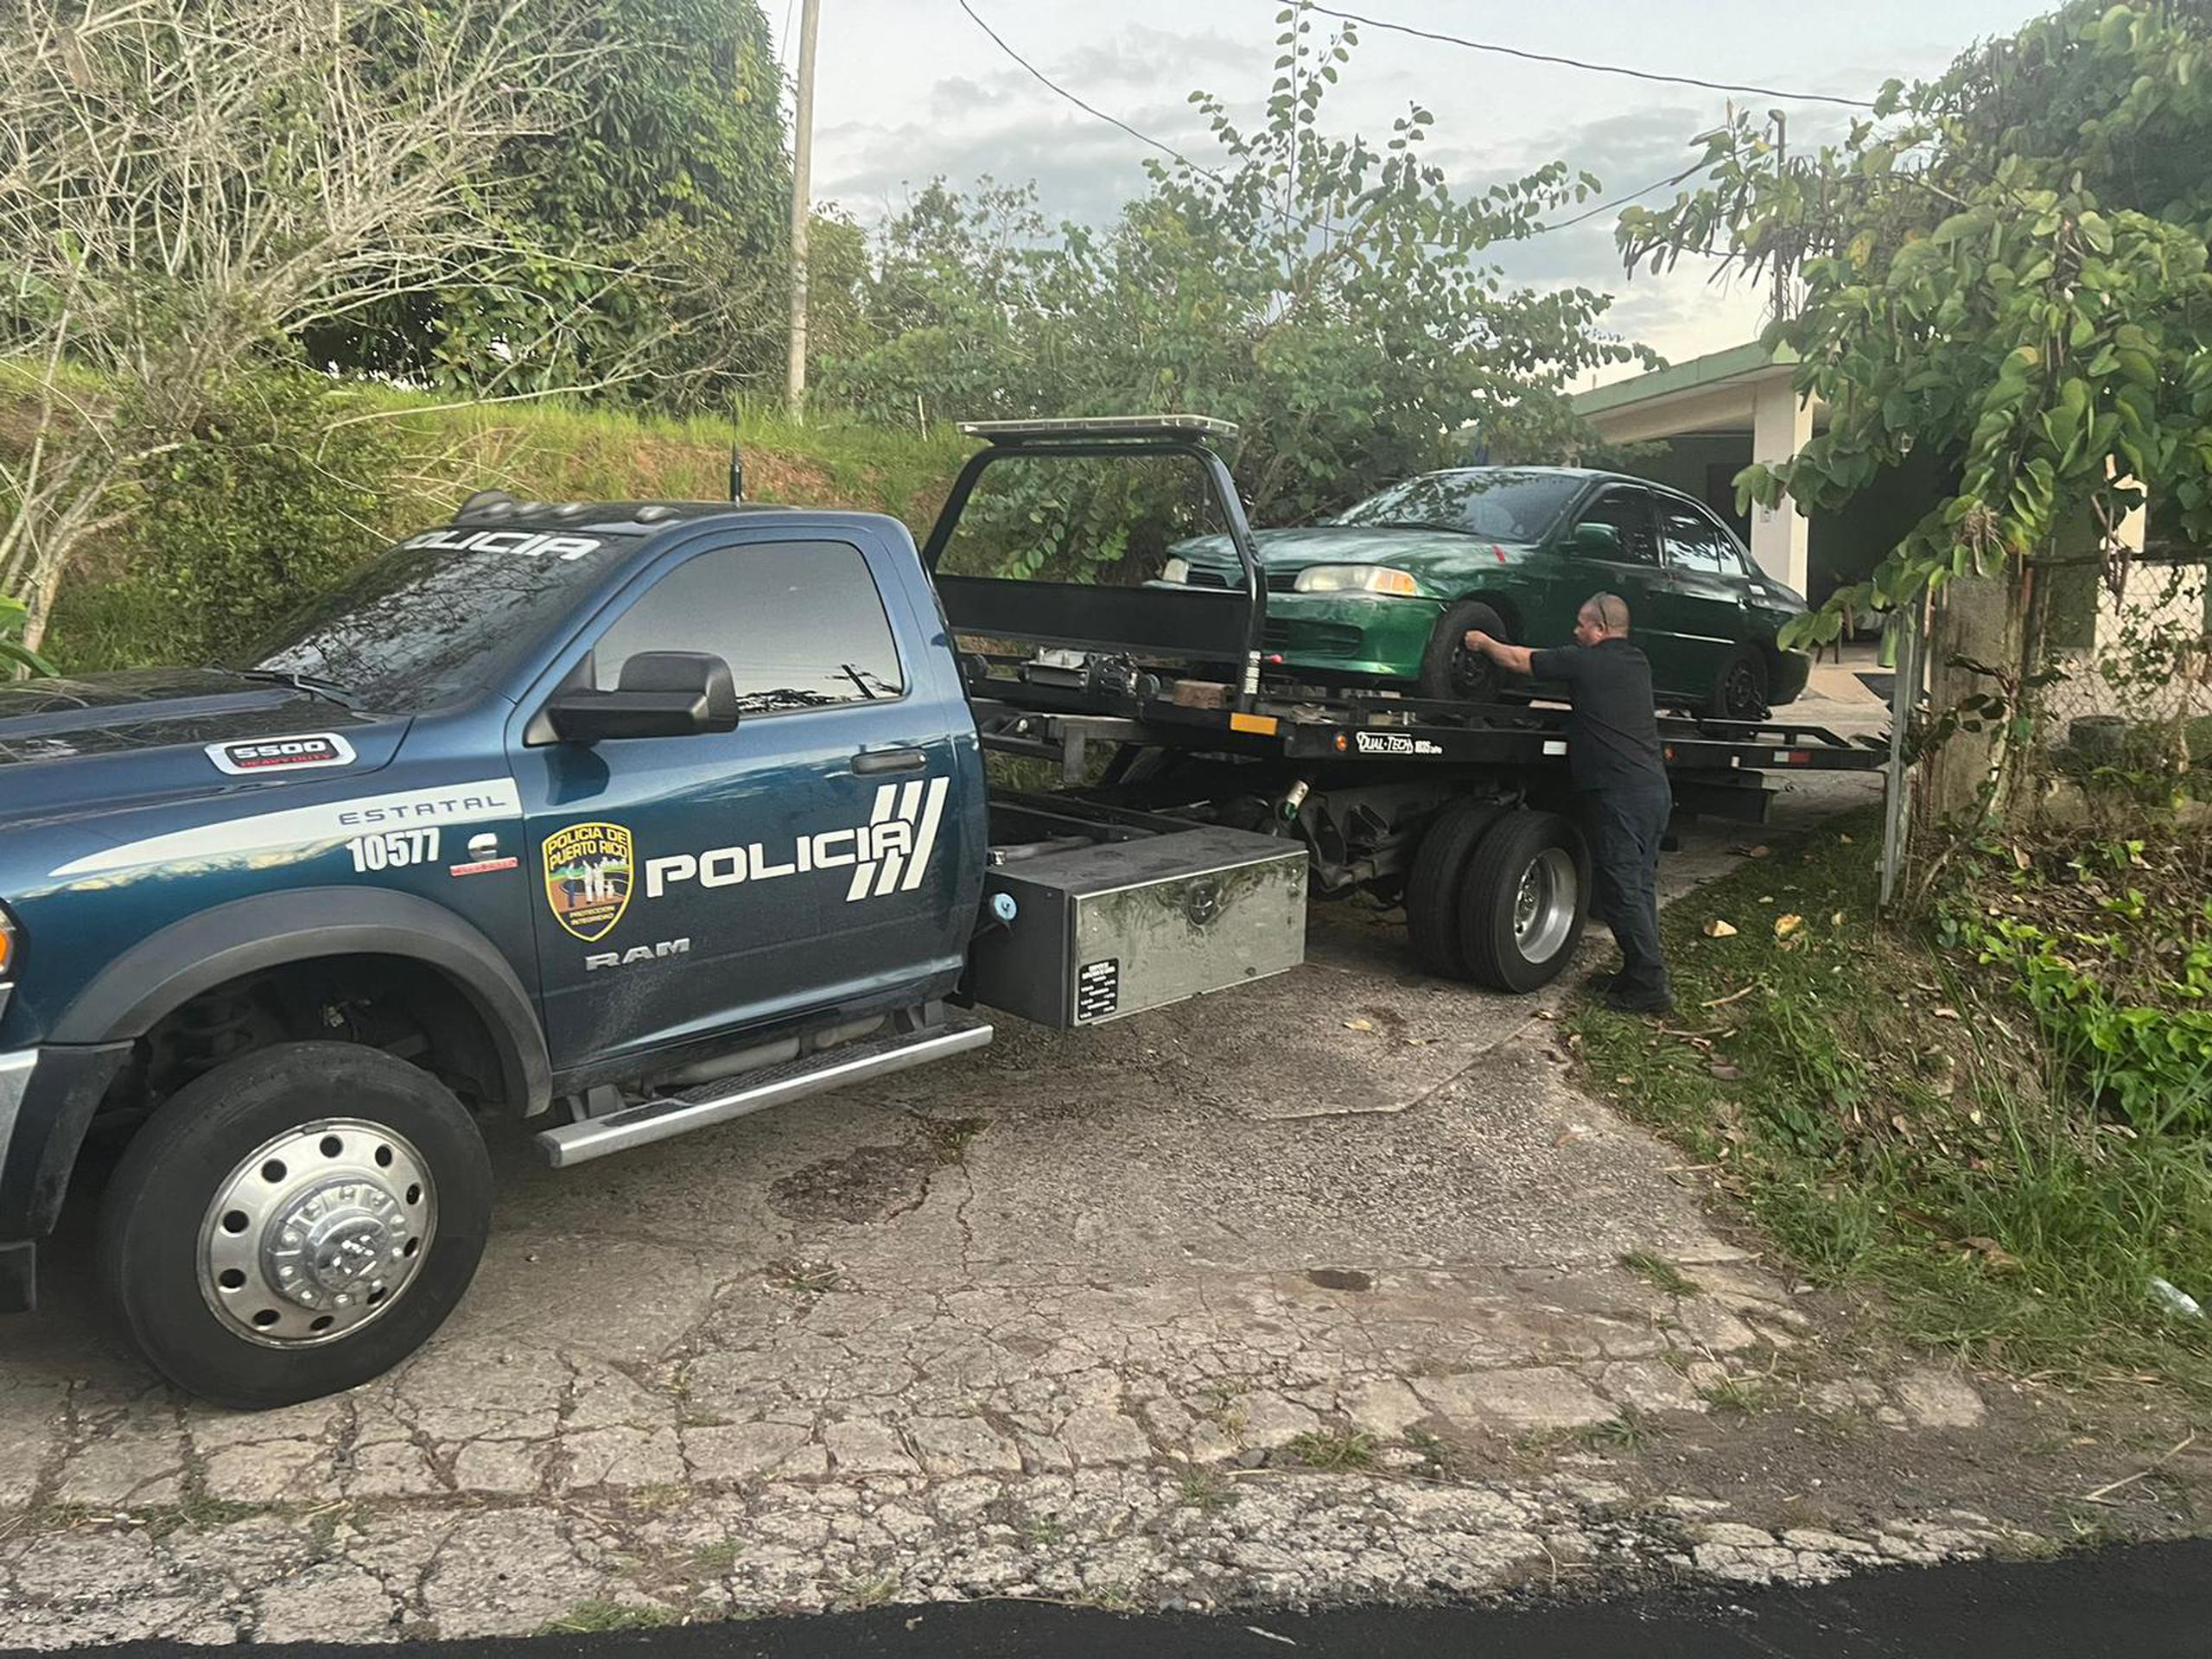 El automóvil Mitsubishi Mirage, color verde oscuro fue ocupado anoche en la carretera PR-420 del barrio Corcovada, en Añasco, como parte de la pesquisa del atentatado contra el aspirante a senador por acumulación Eliezer Molina Pérez.